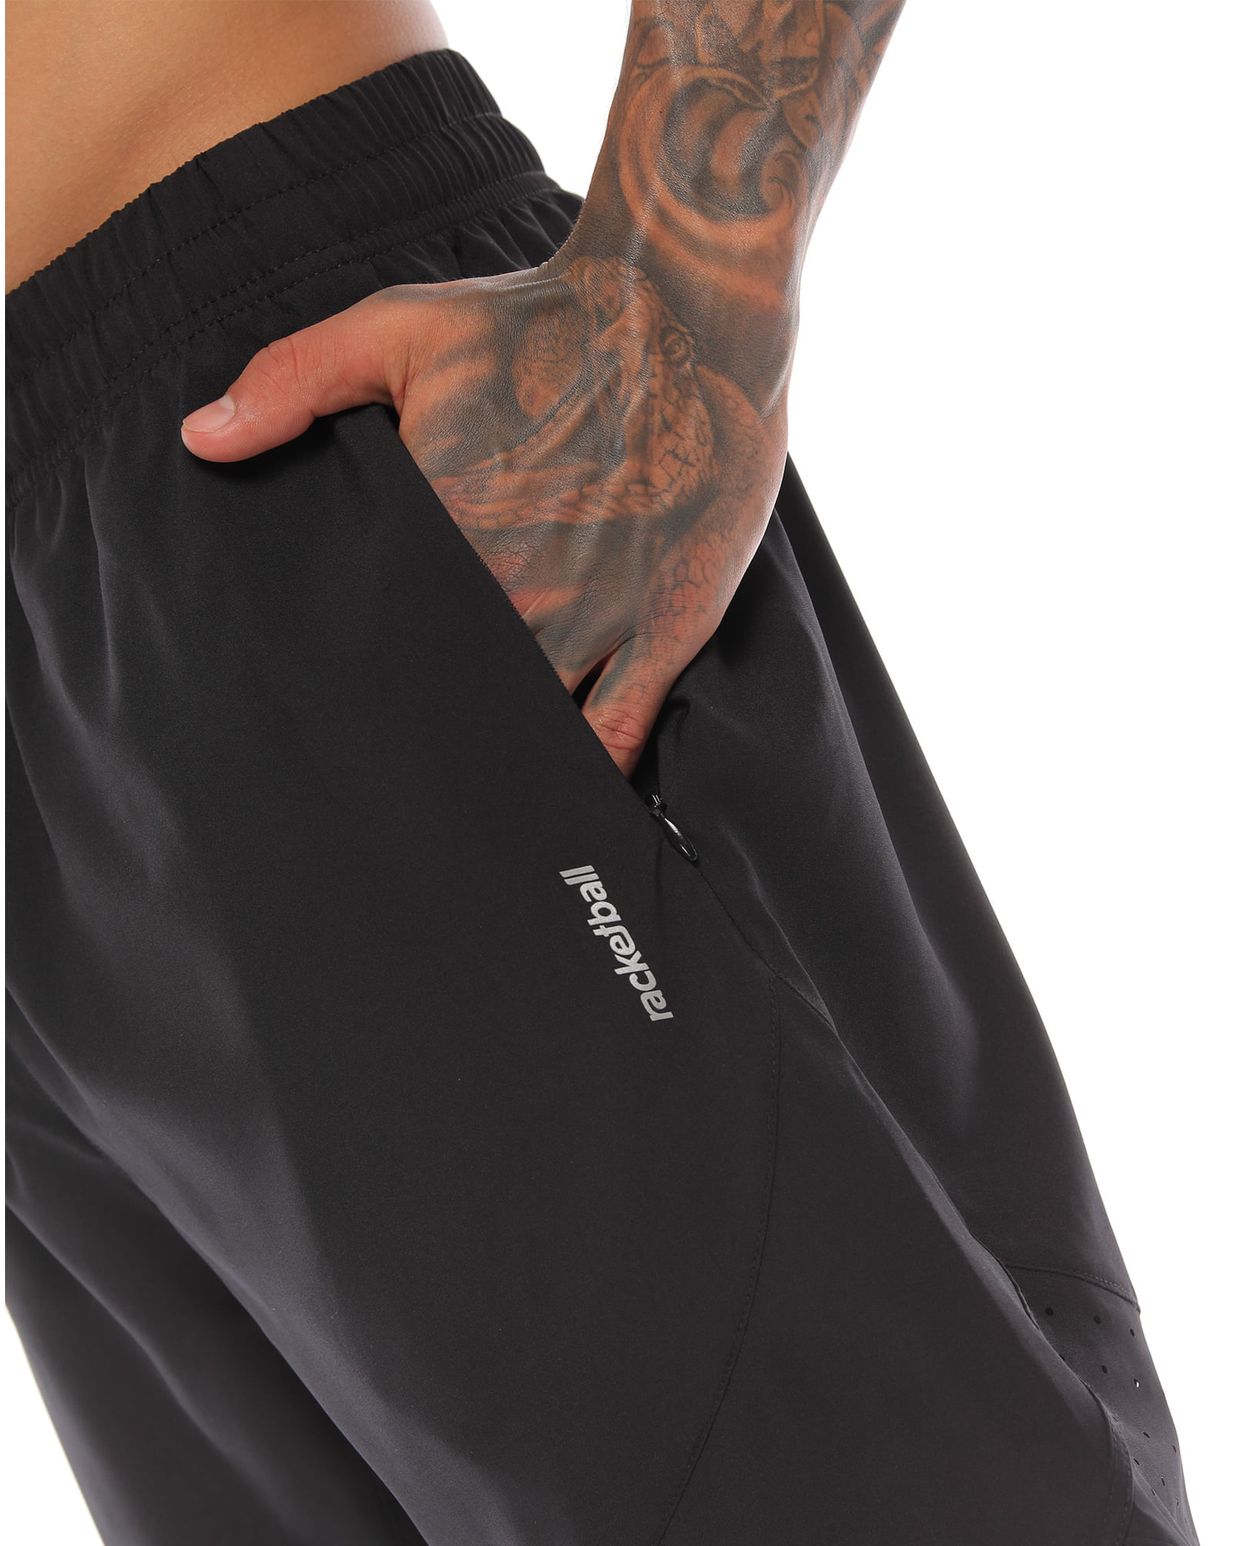 pantaloneta deportiva color negro para hombre parte lateral izquierda con bolsillo fncional logo rackebtall